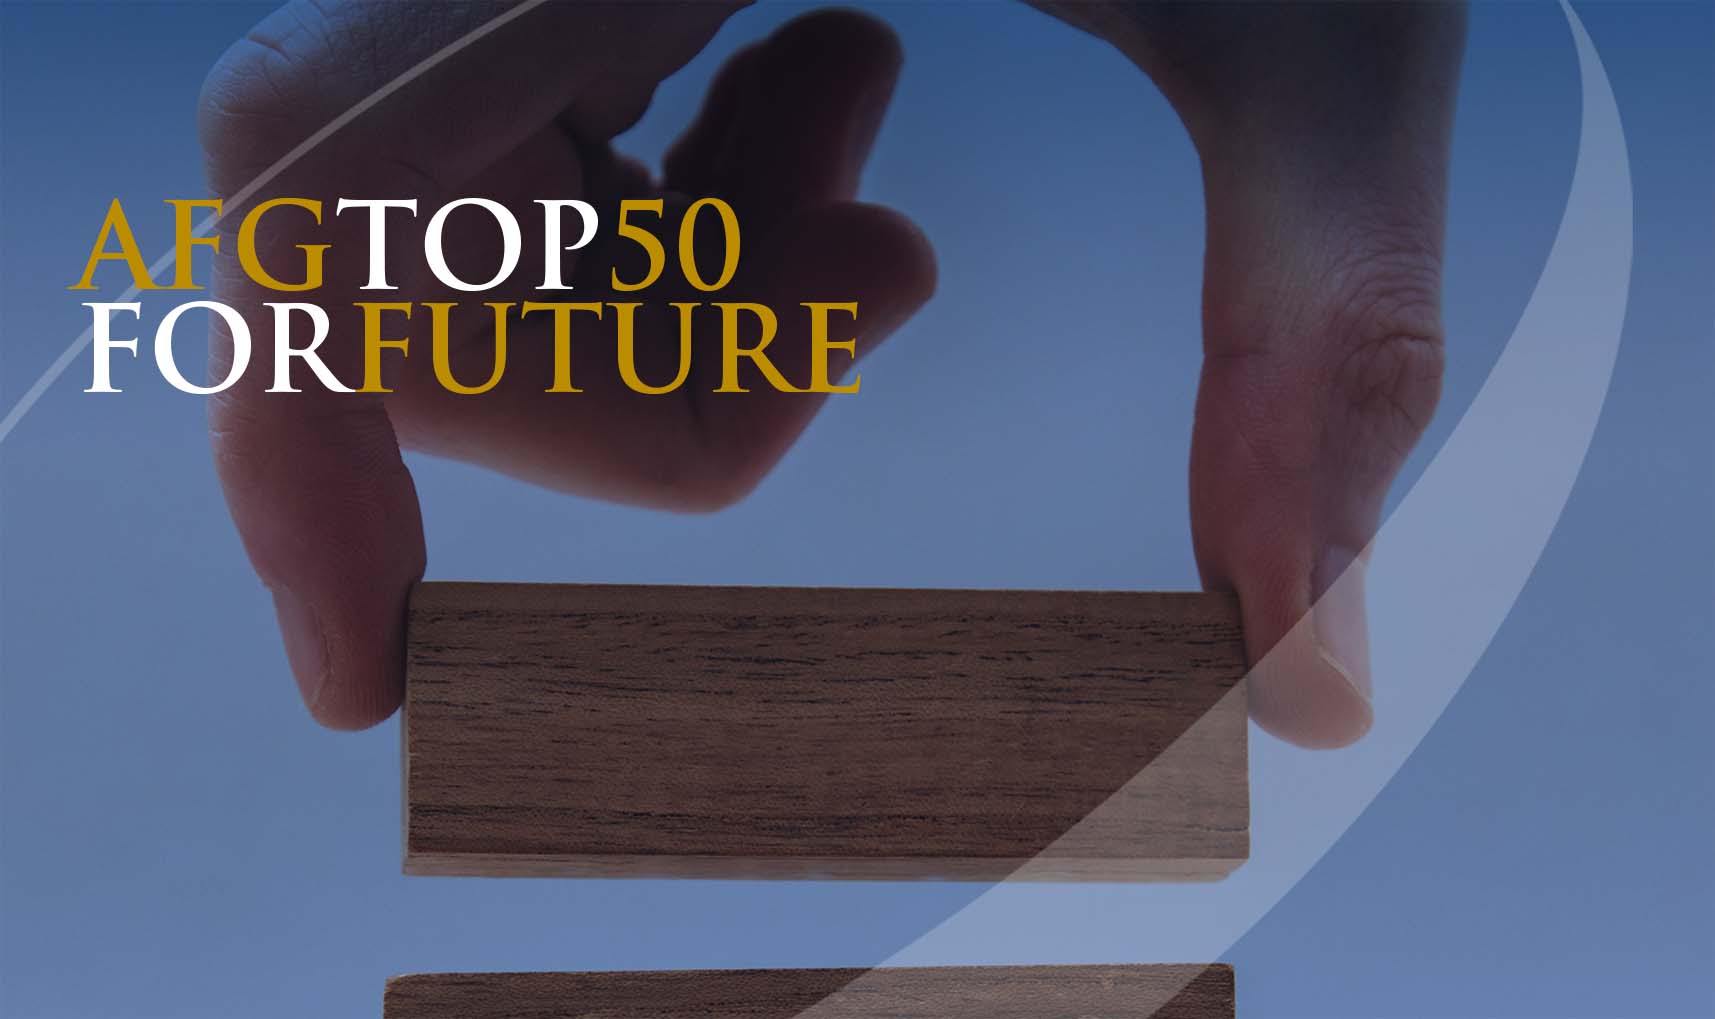 AFG TOP50 FOR FUTURE un evento firmato Assifriuli Group.